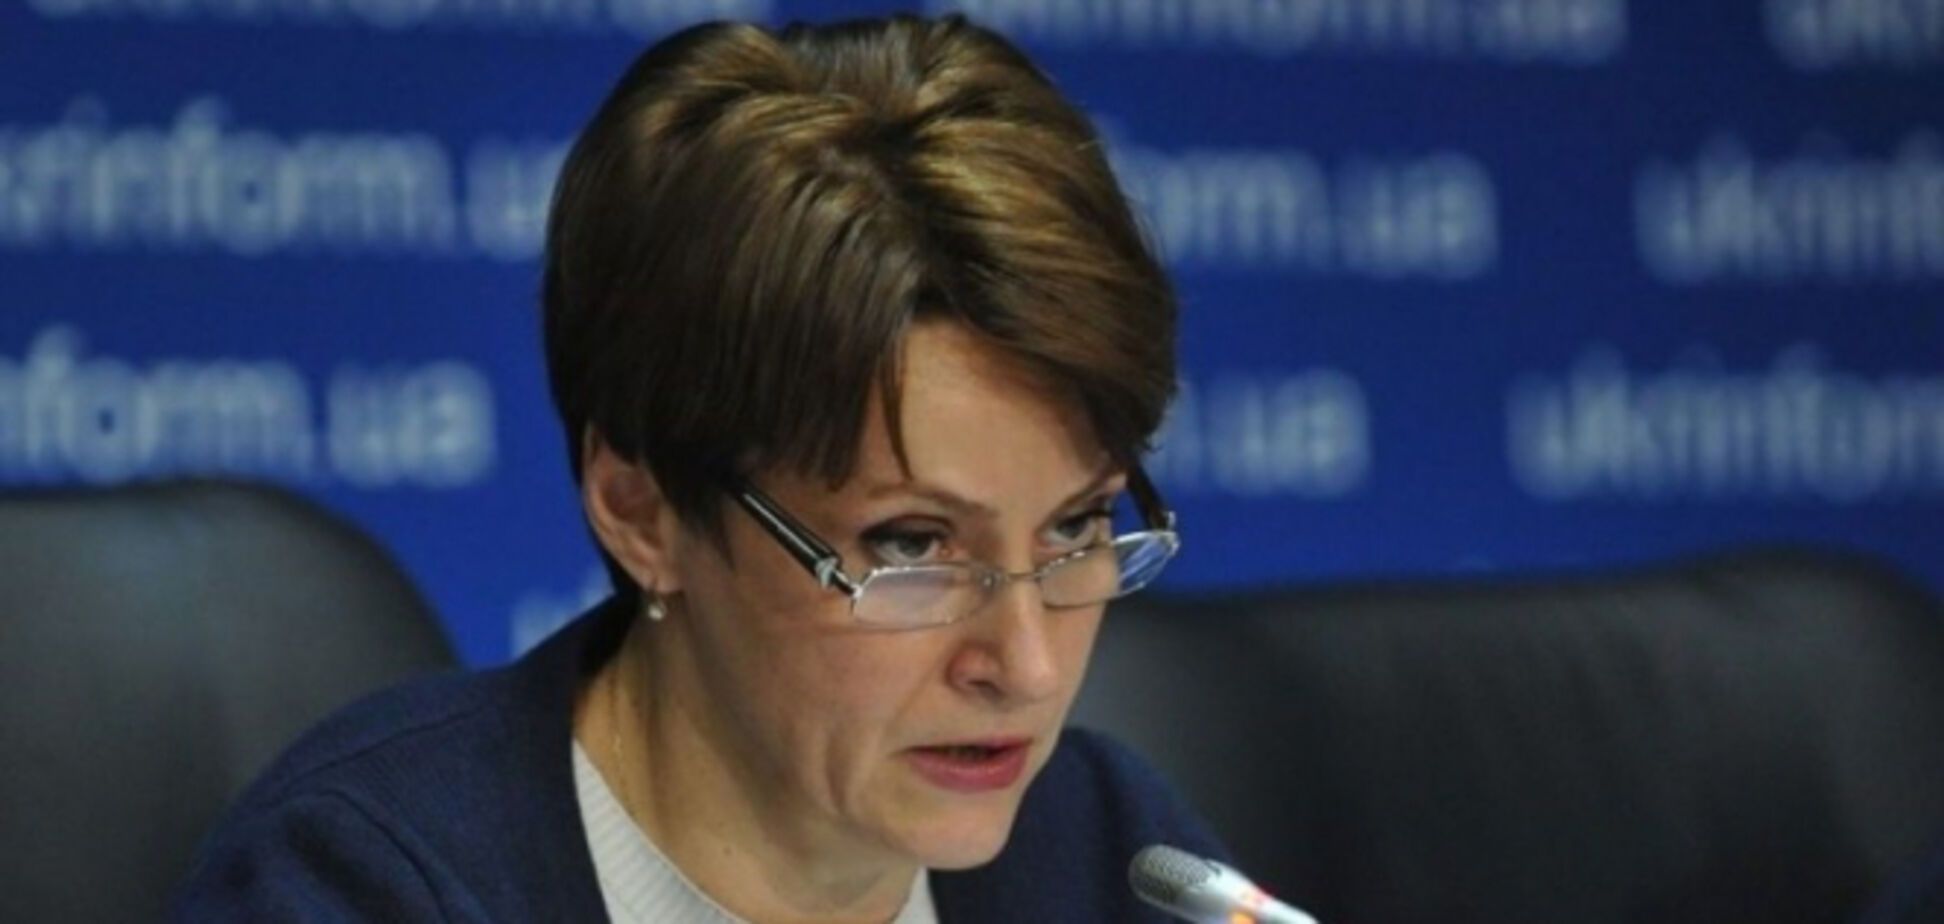 Министр финансов Данилюк скандалит, чтобы не платить налоги - Южанина